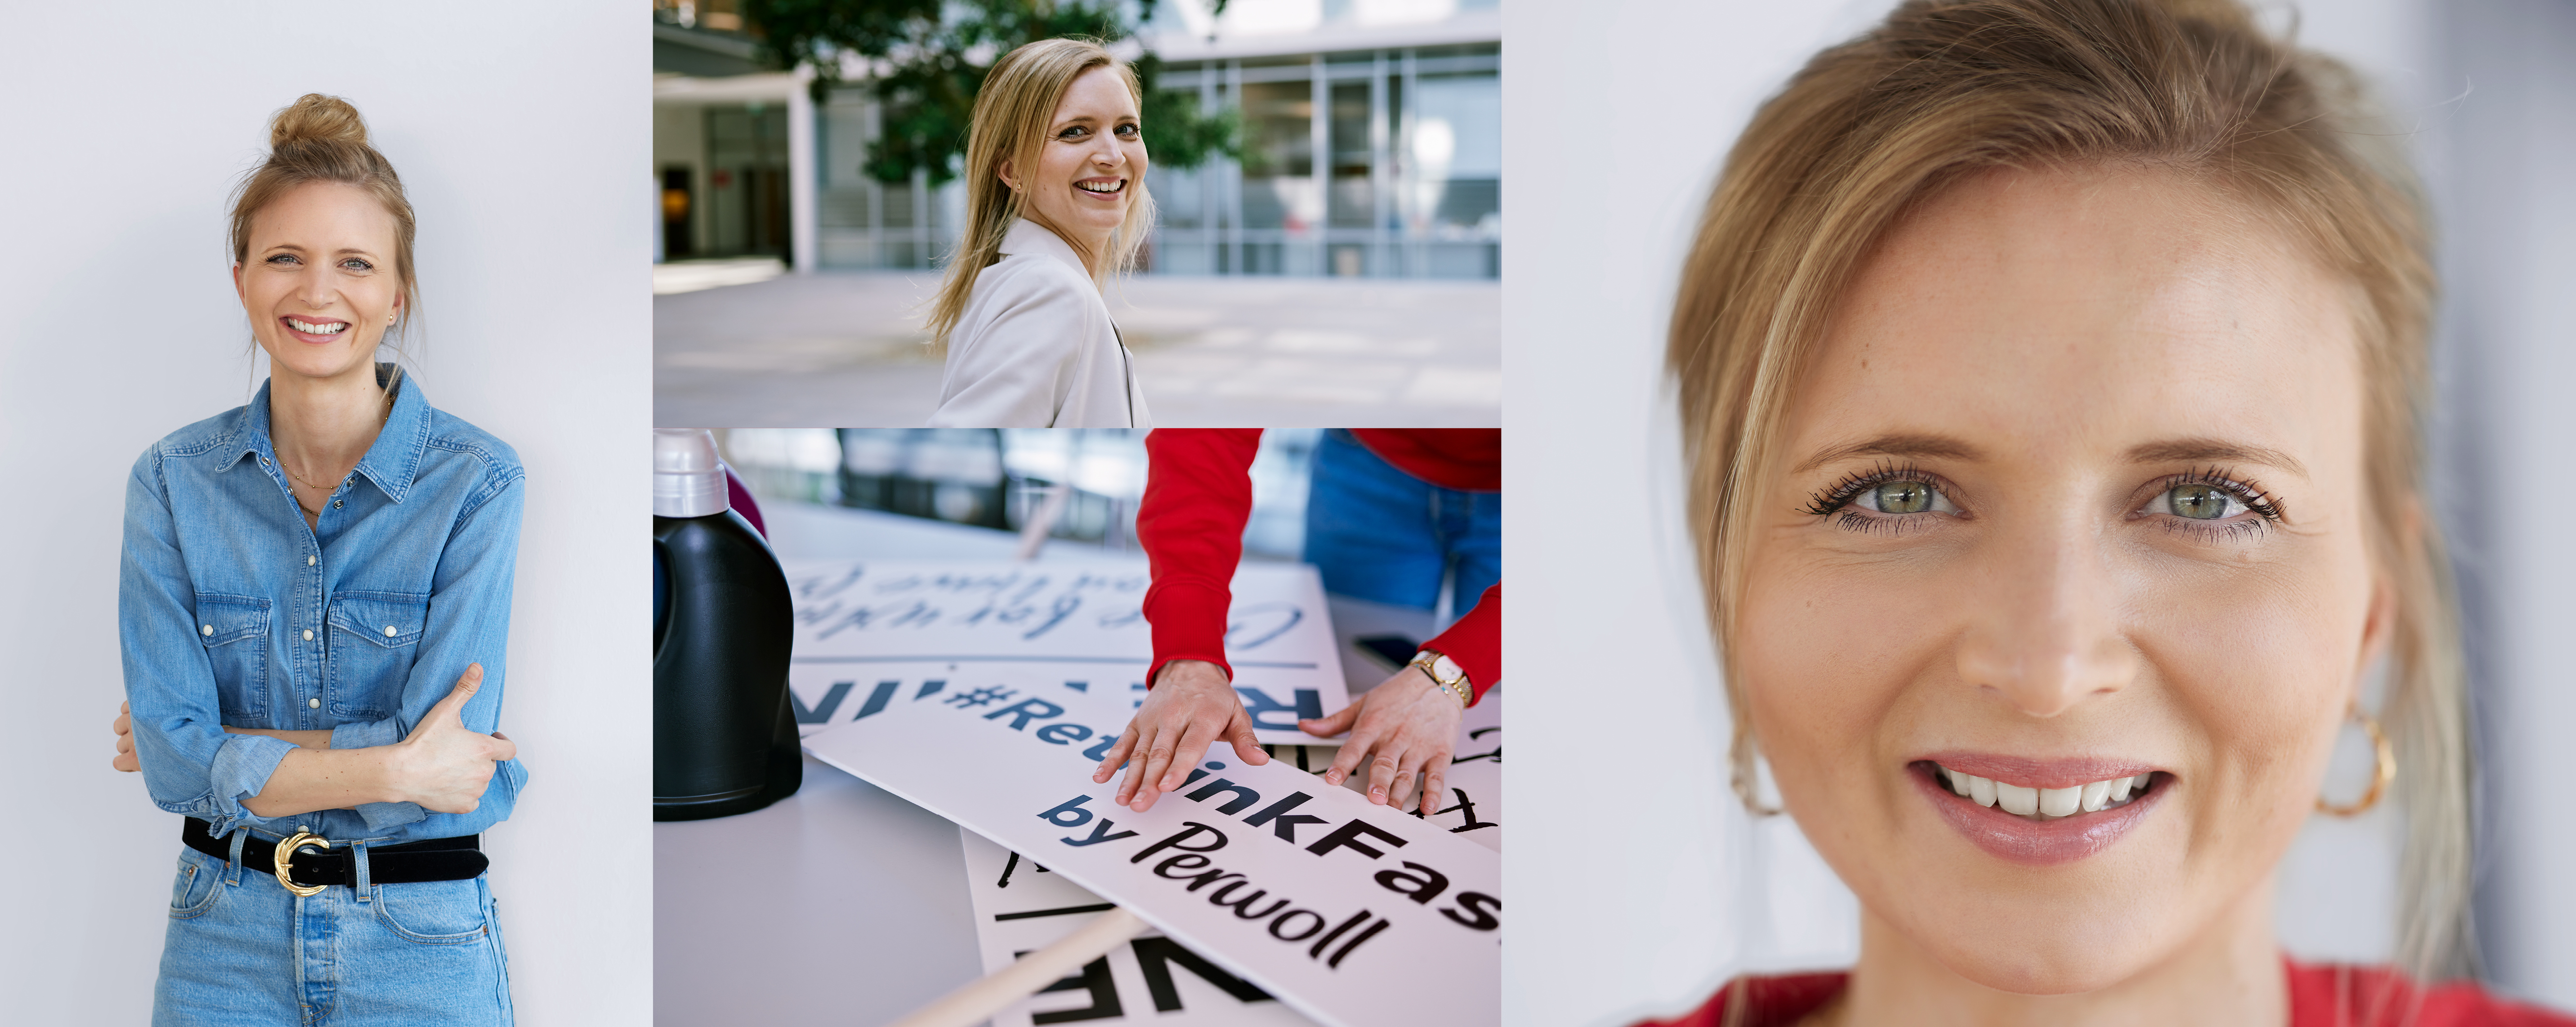 Eine Mitarbeiterin von Henkel vor ihrem Arbeitsplatz. Sie posiert für die Kamera, sortiert Schilder aus der #Rethink Fashion Kampagne von Persil und lächelt. 